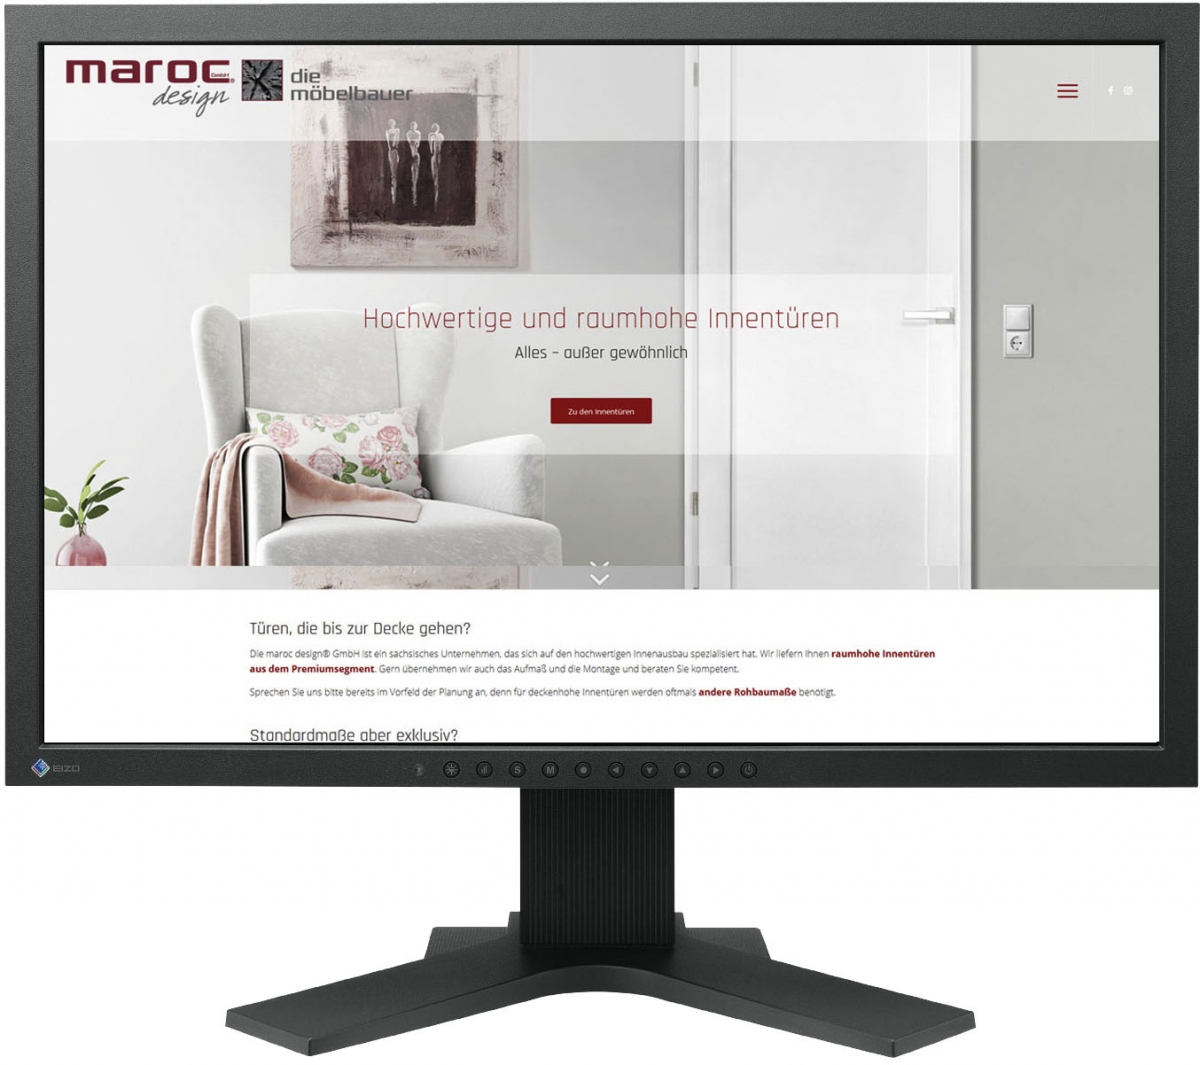 Website für marocdesign GmbH Innentüren